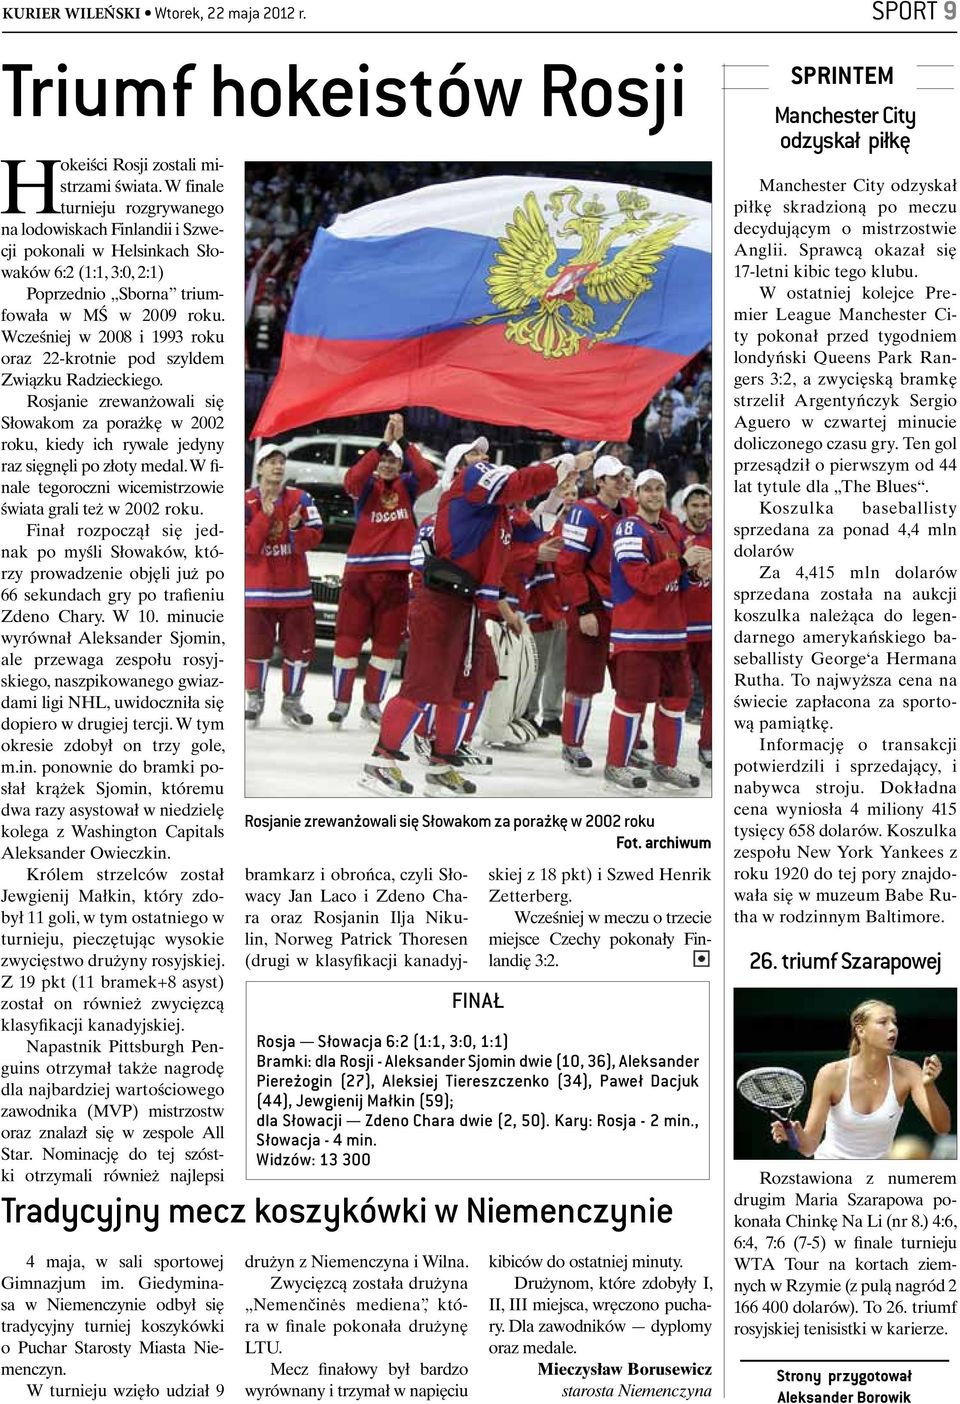 Wcześniej w 2008 i 1993 roku oraz 22-krotnie pod szyldem Związku Radzieckiego. Rosjanie zrewanżowali się Słowakom za porażkę w 2002 roku, kiedy ich rywale jedyny raz sięgnęli po złoty medal.